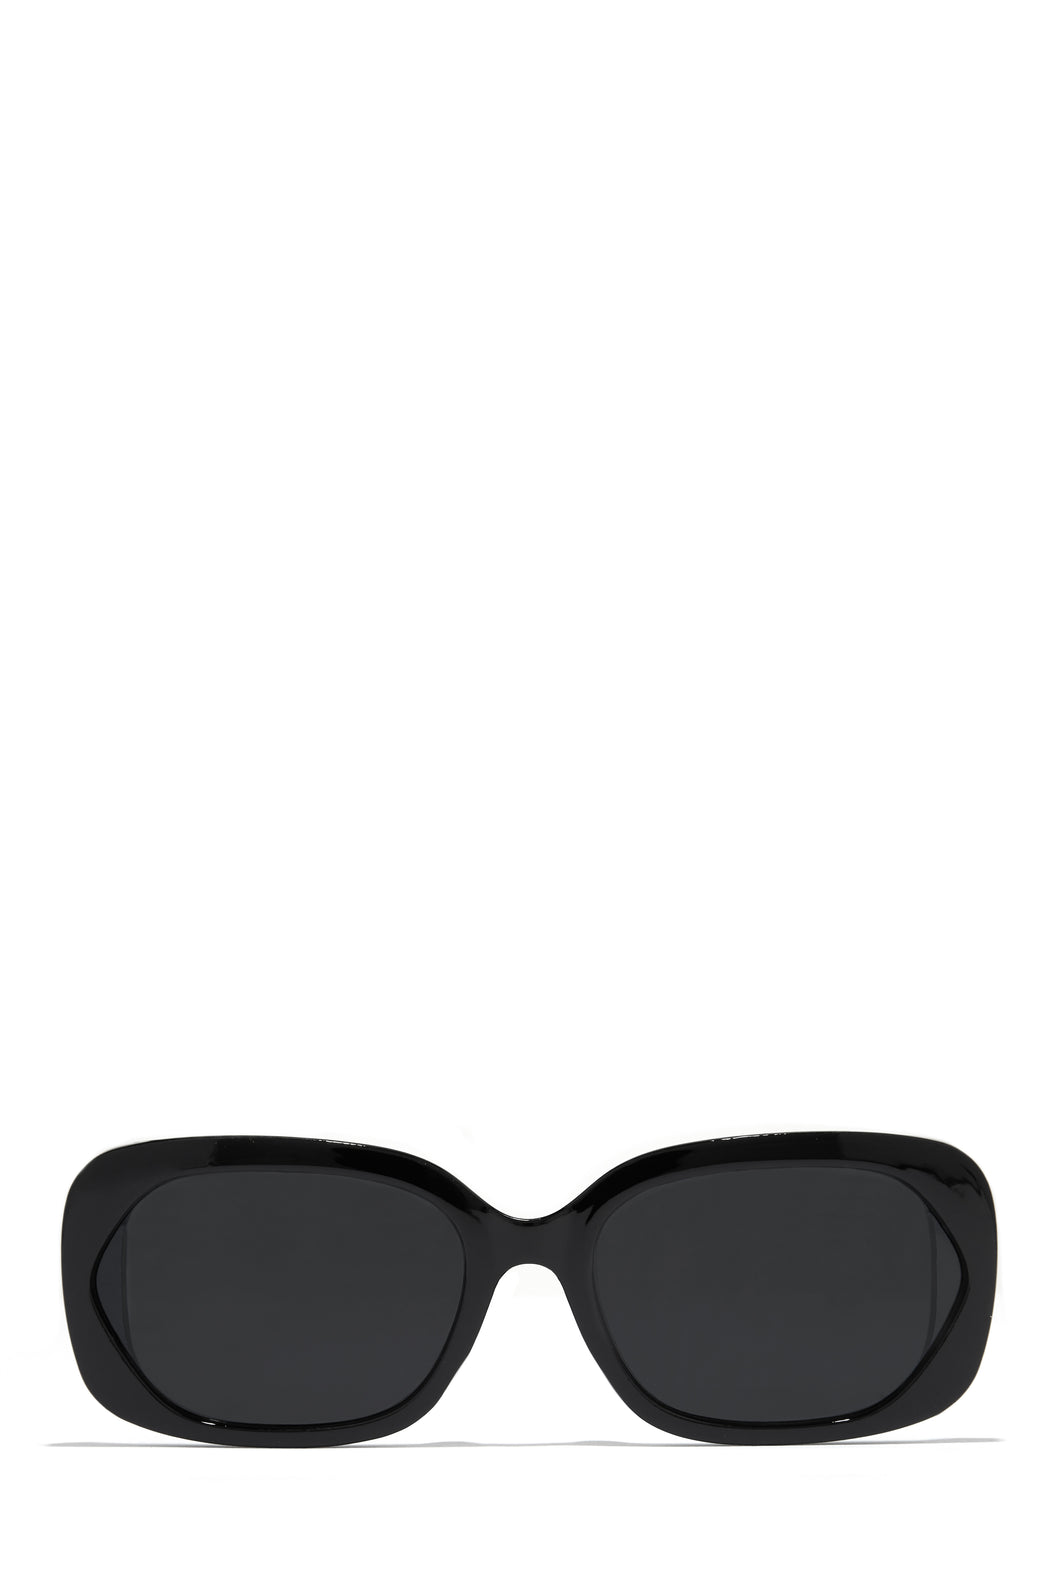 Black Frame Spring Break Sunglasses